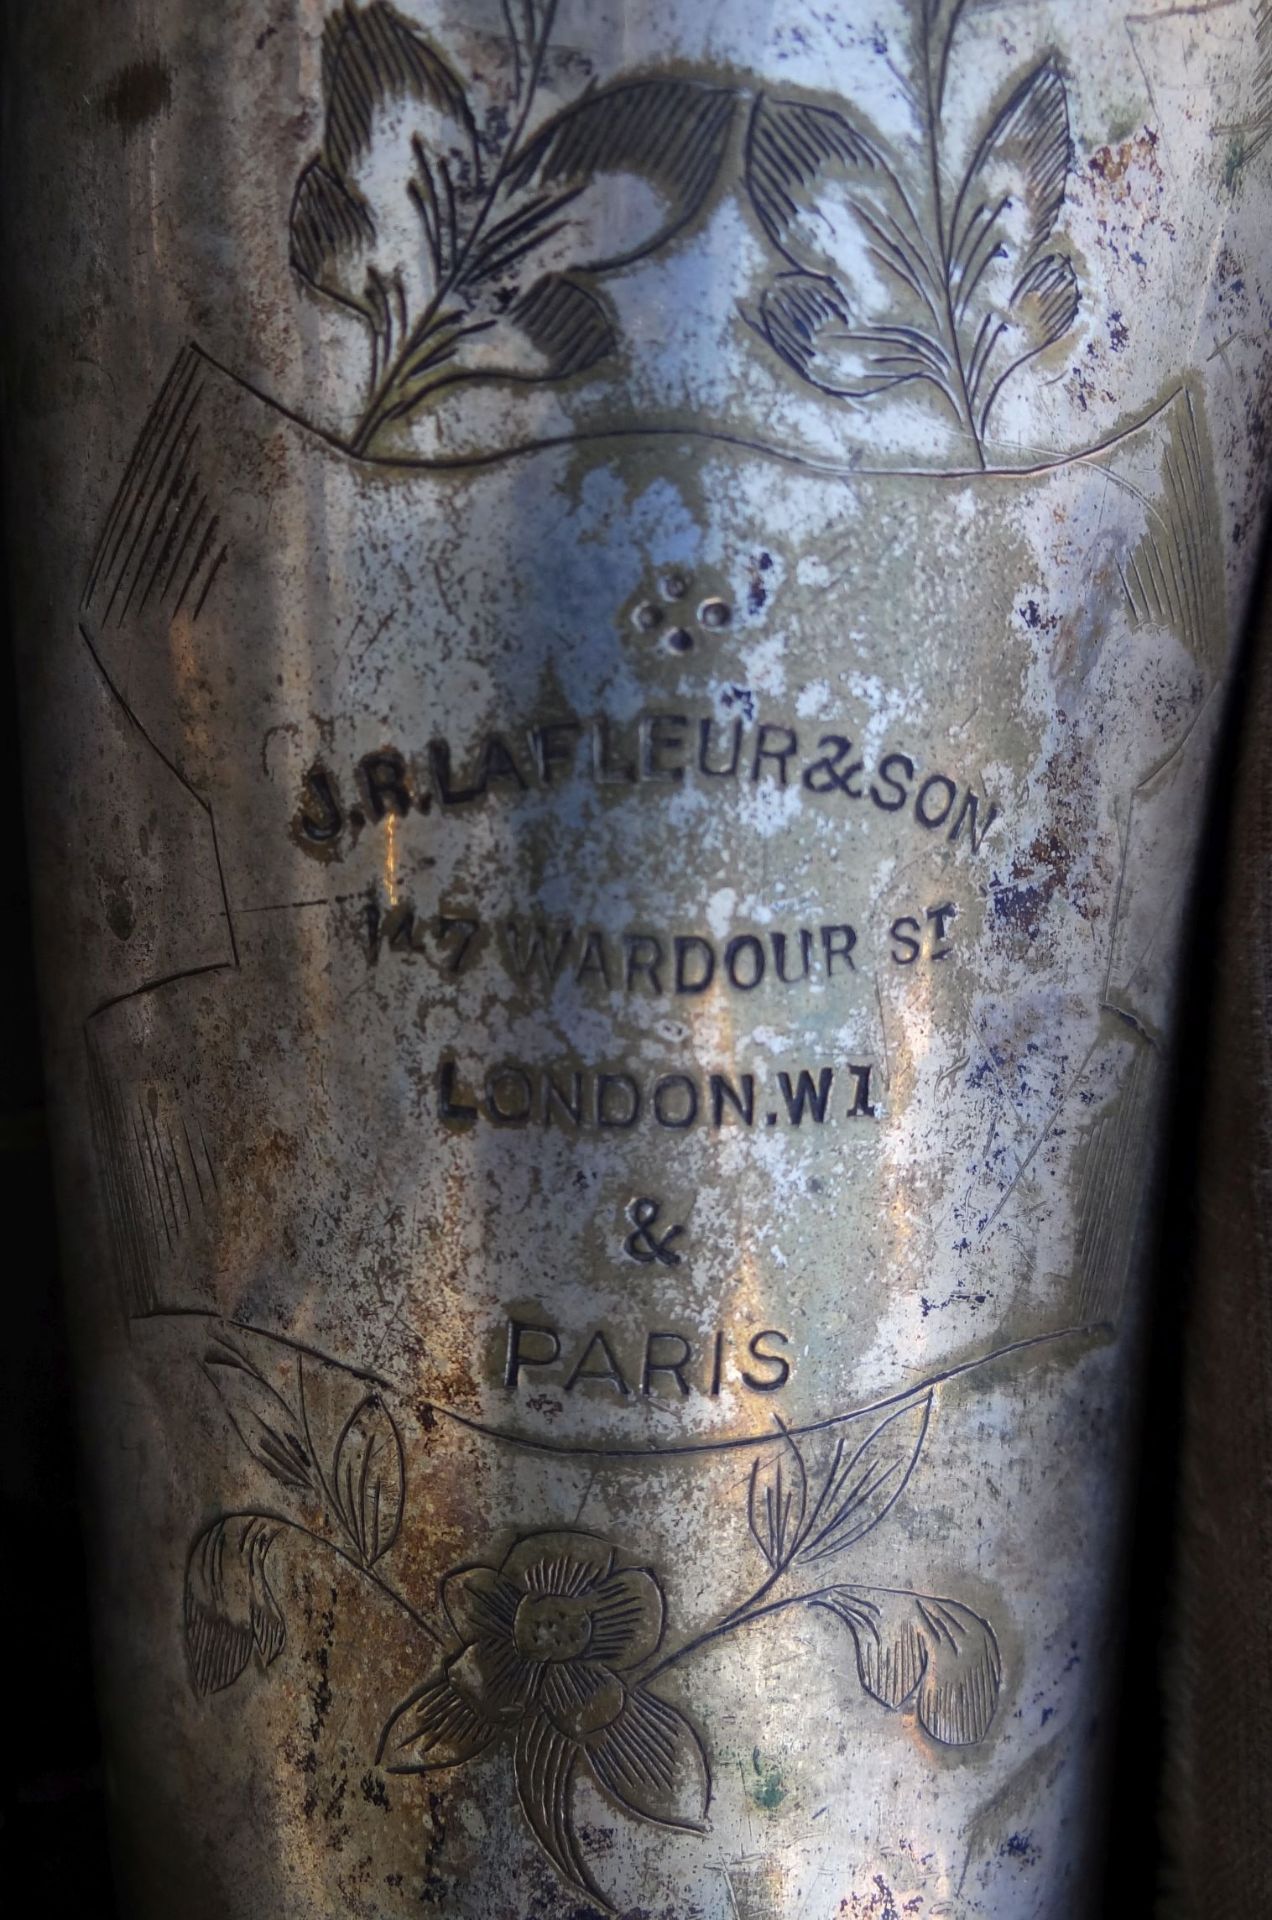 gr. Saxophon "J.R.Lafleur&Sons" London/Paris in Koffer (80x27 cm) Alters-u. Gebrauchsspuren - Bild 4 aus 9